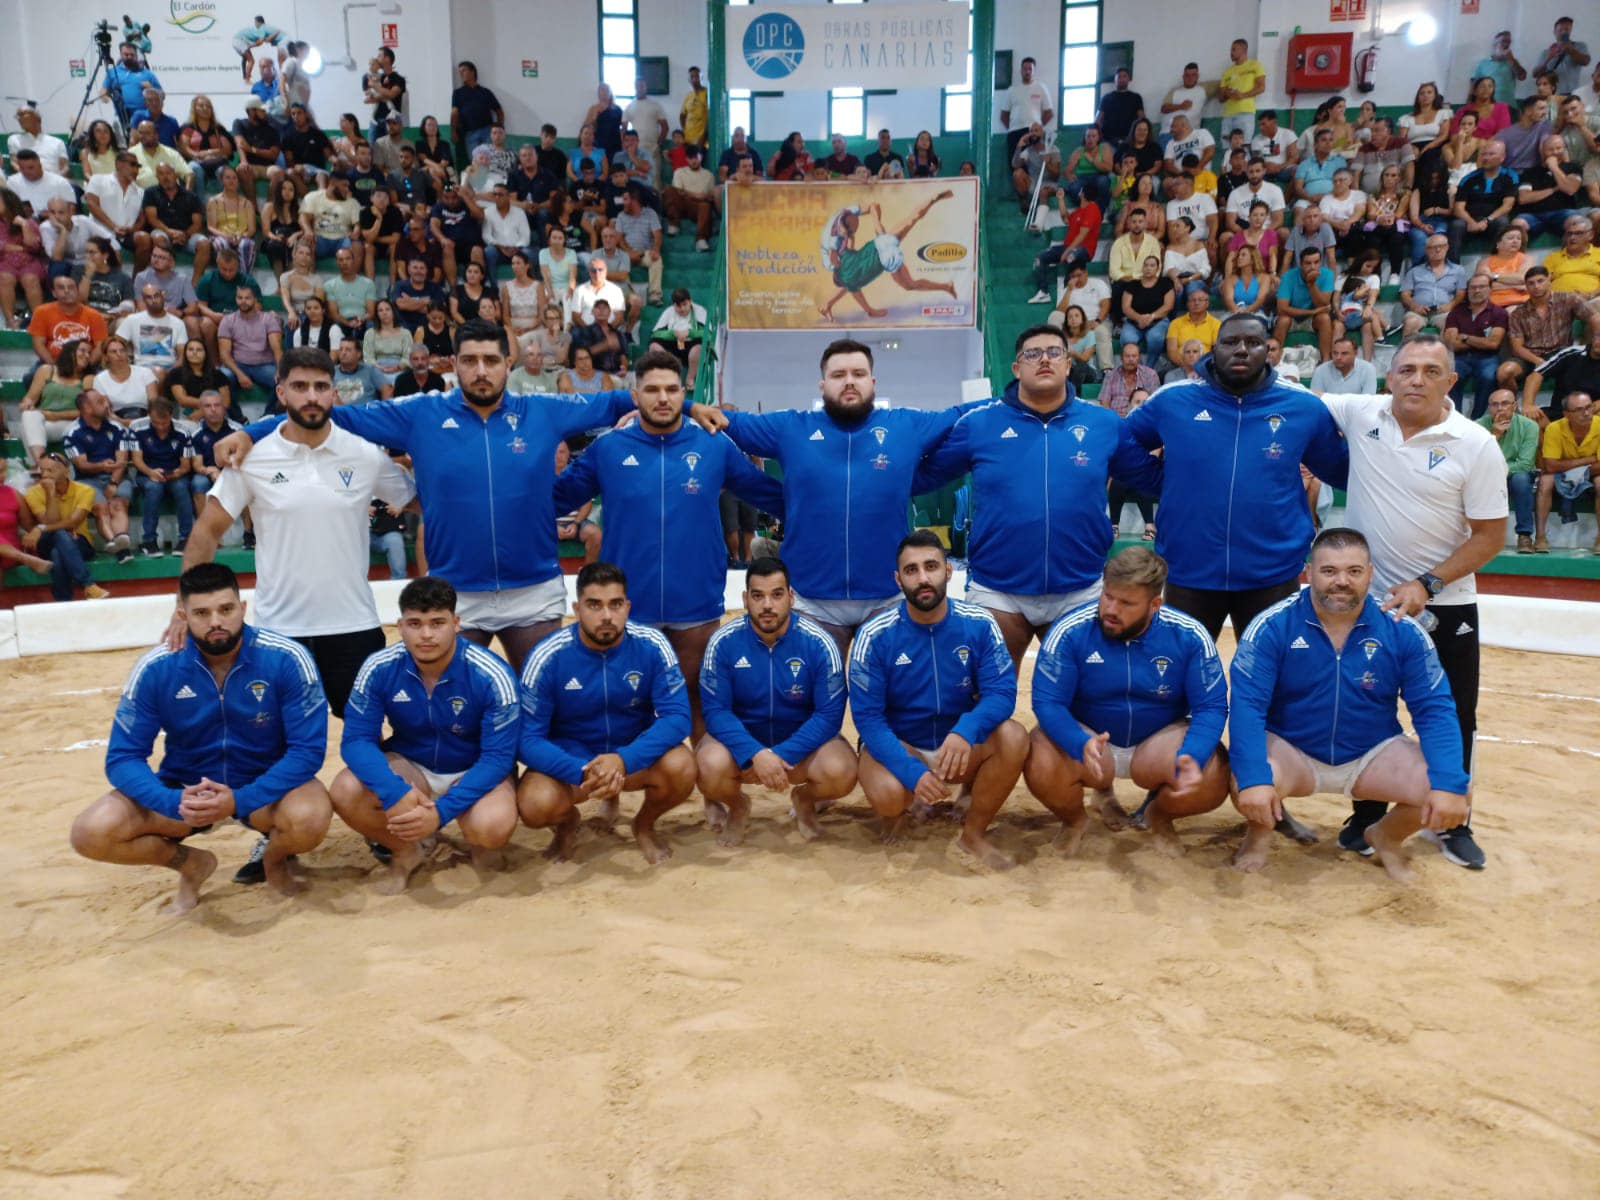 Crónica de las Semifinales de la Liga Disa Gobierno de Canarias (1 de julio)